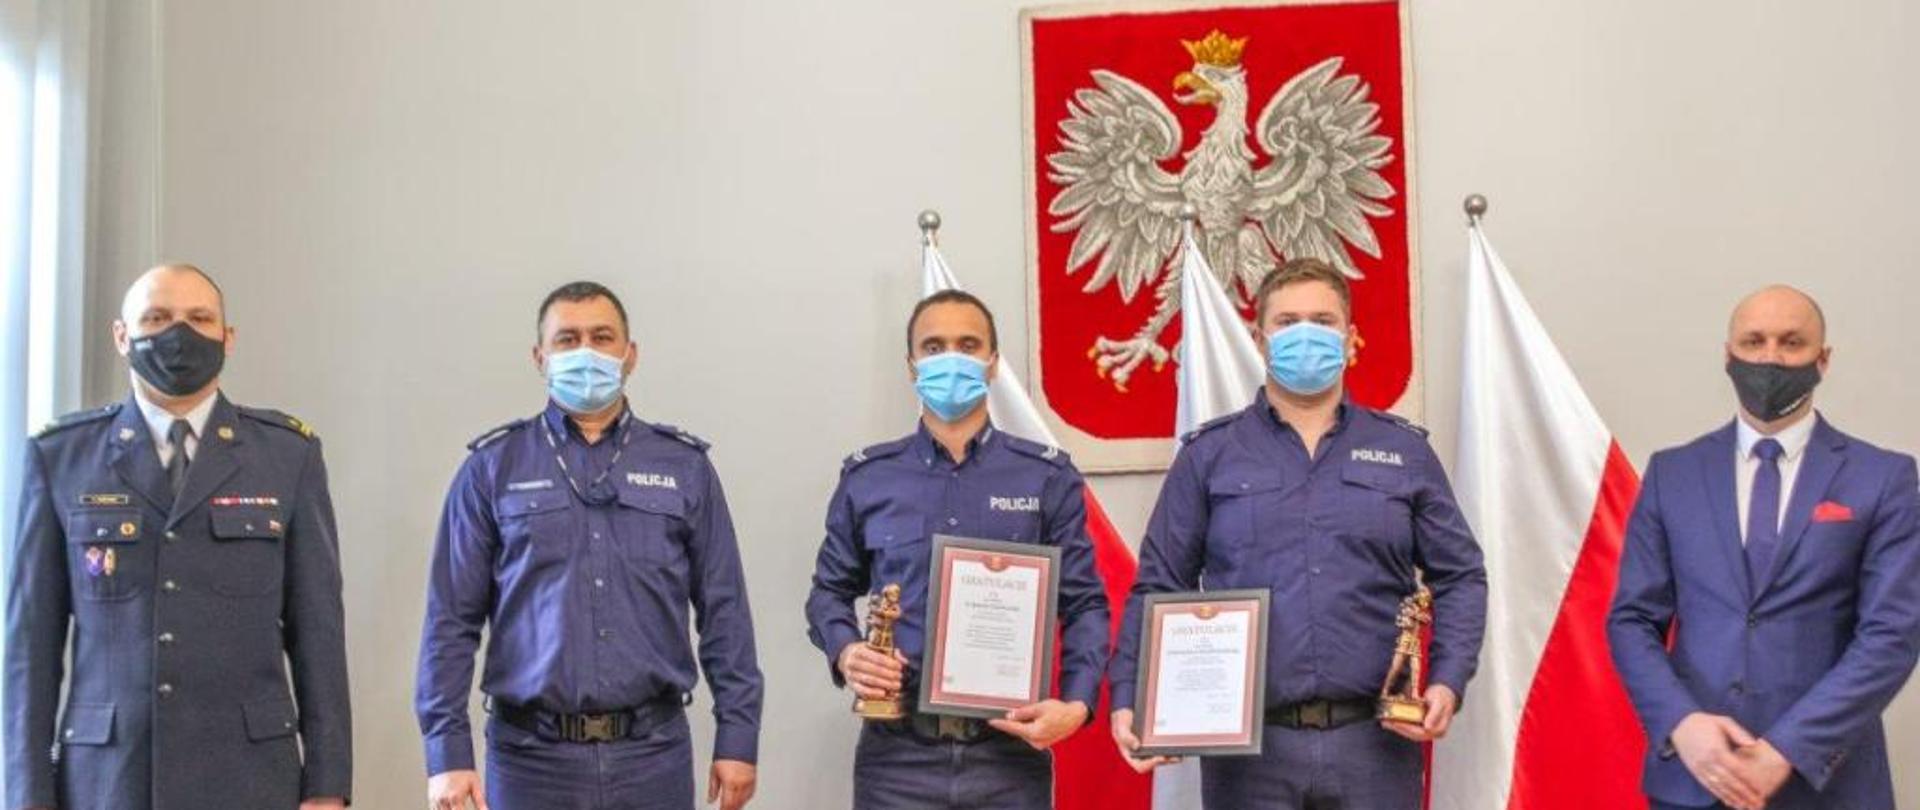 Podziękowania Komendanta Powiatowego PSP w Sławnie funkcjonariuszom Policji z Darłowa